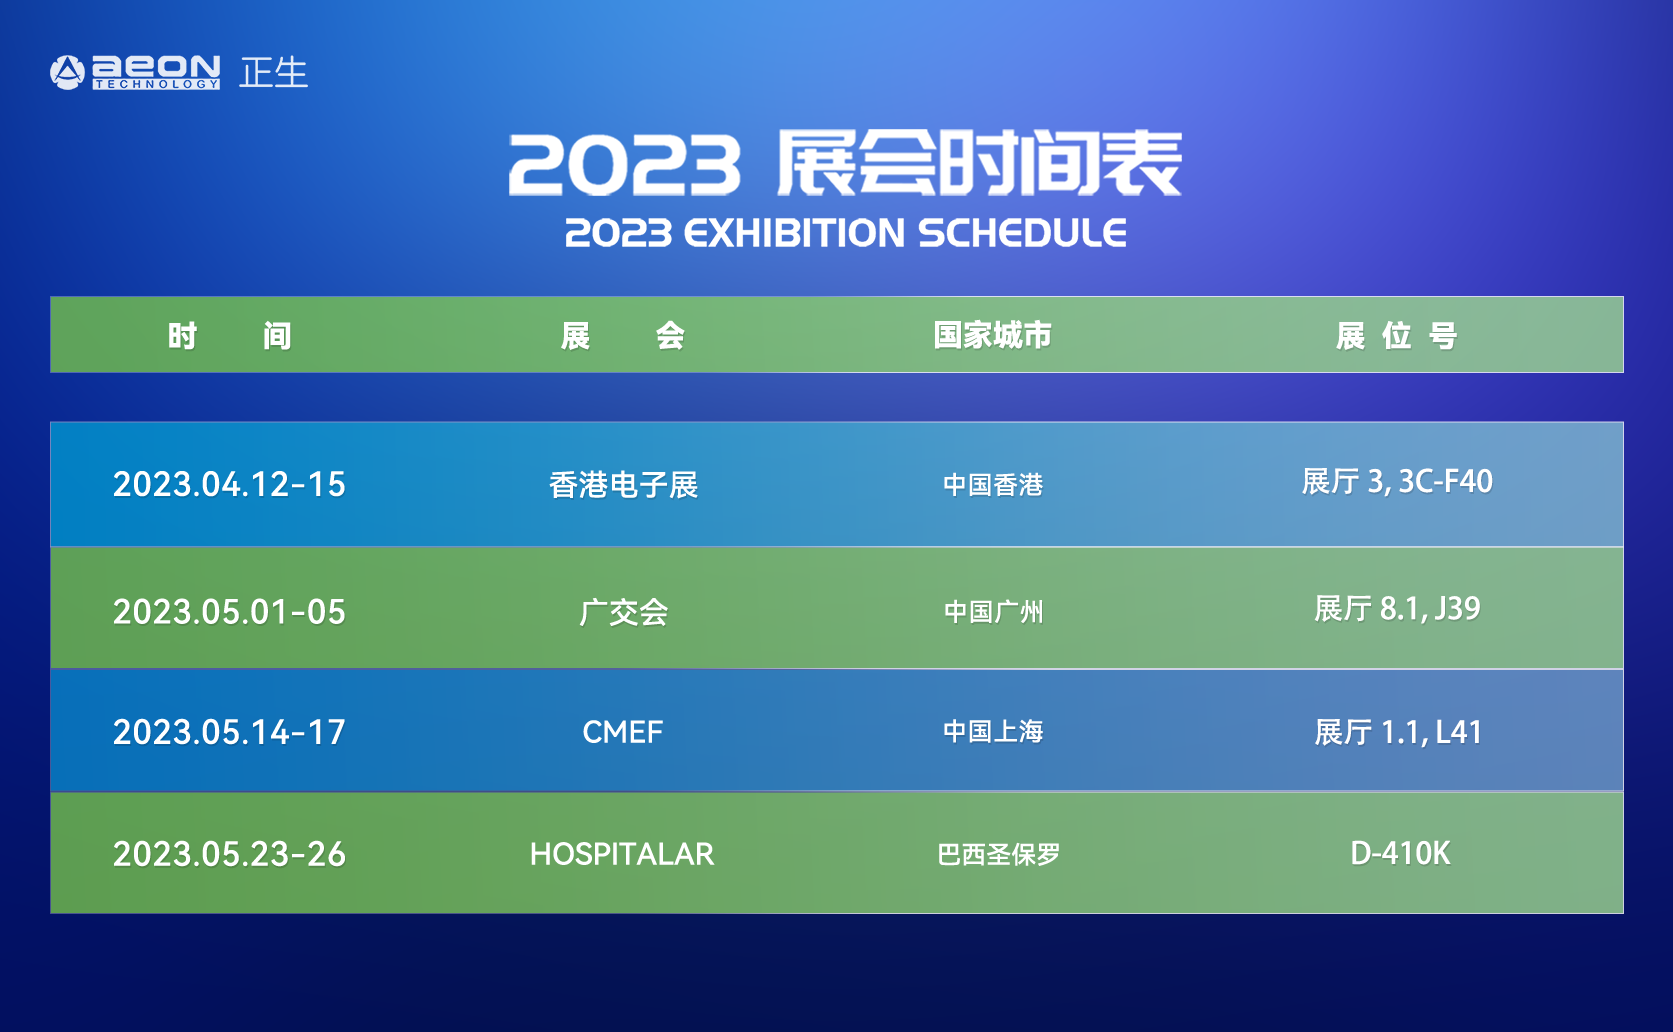 2023会展安排图-中文.png